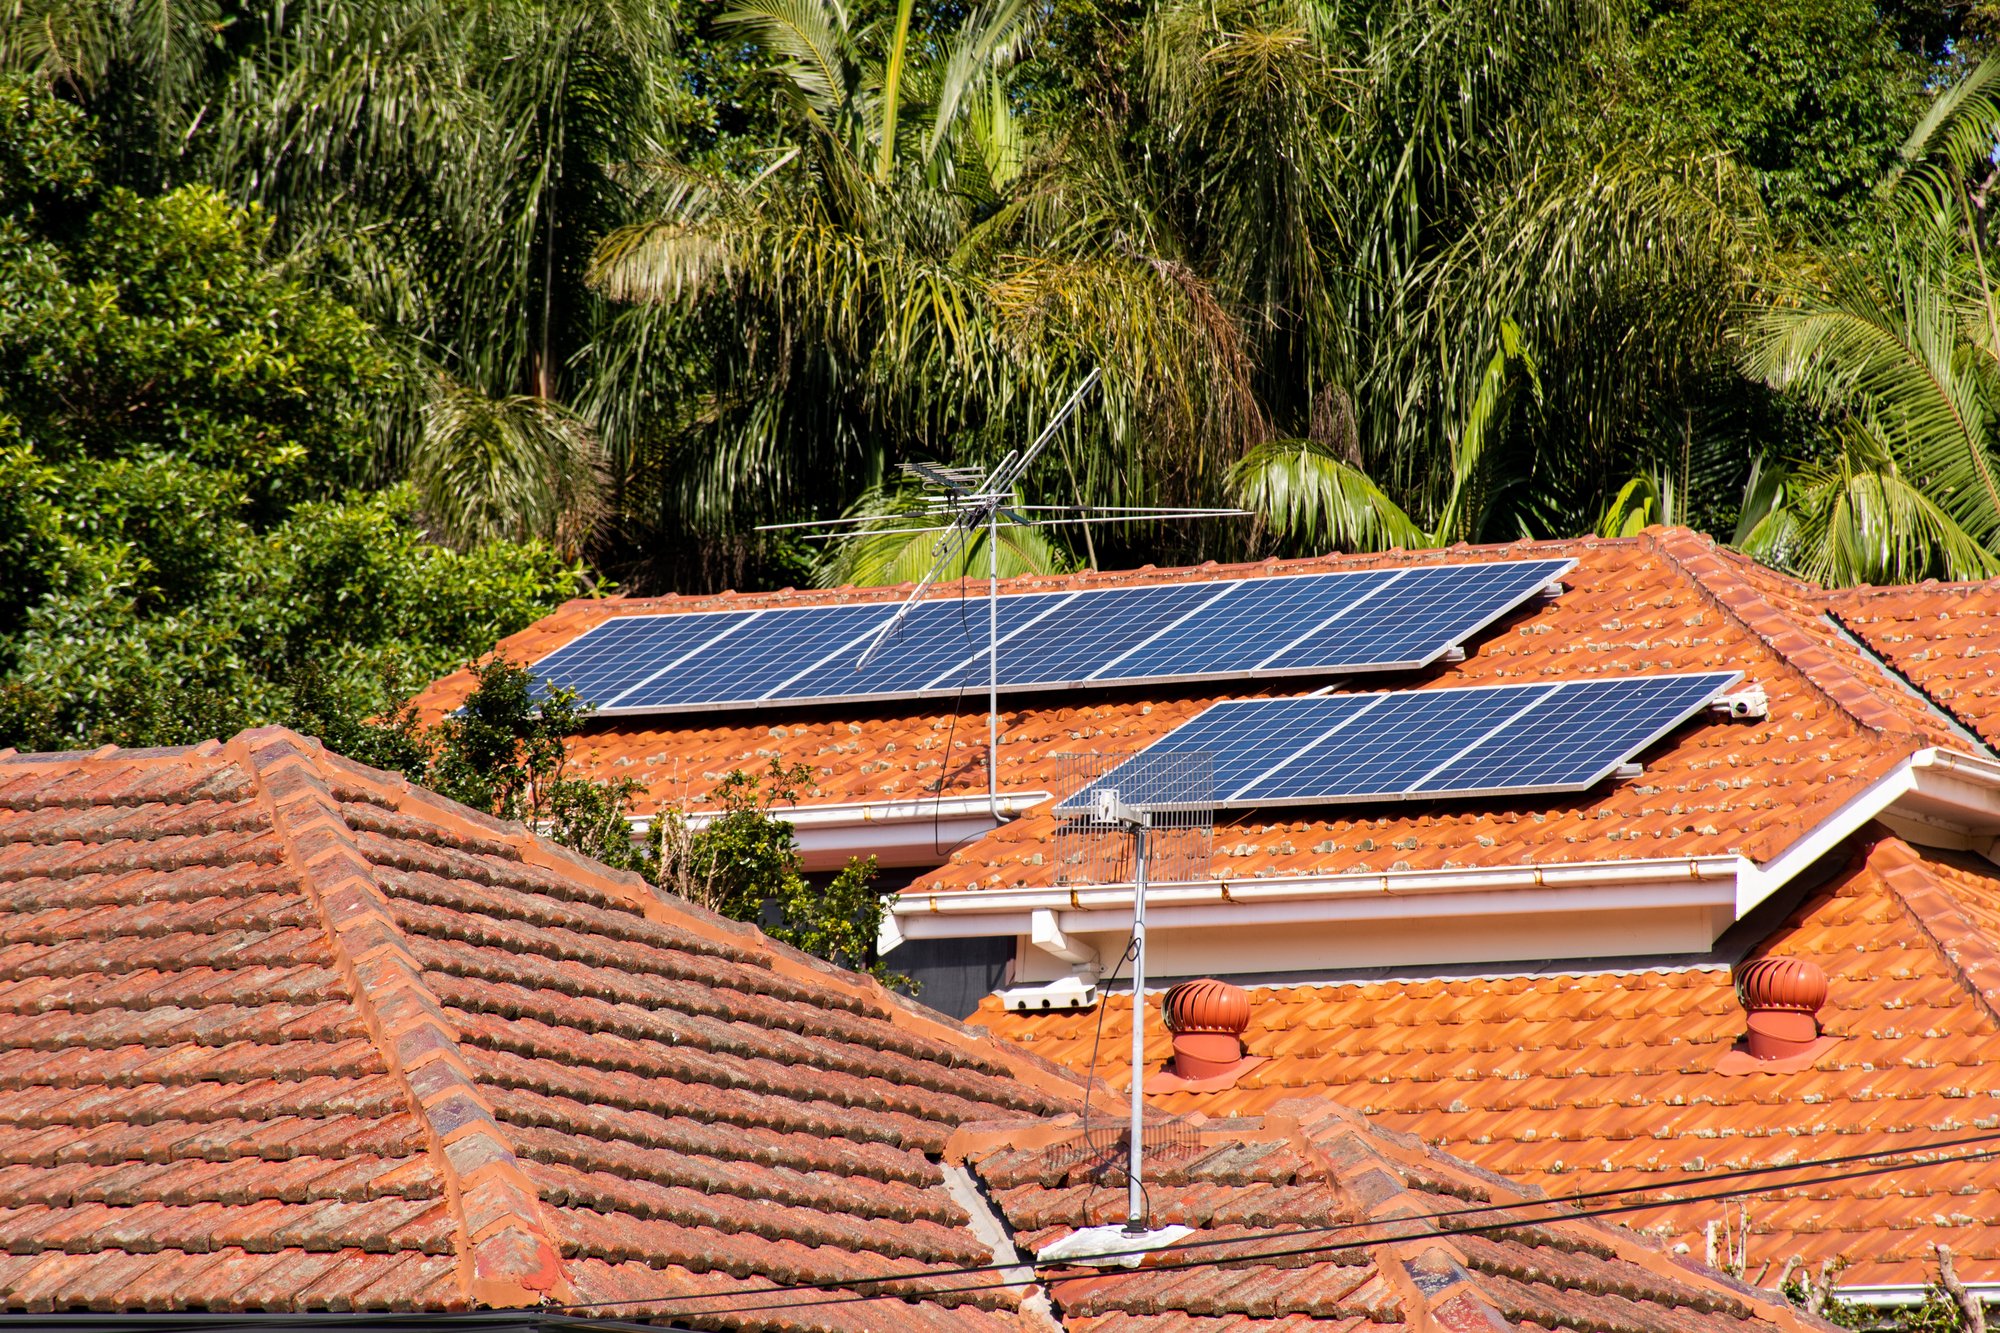 solar-panels-on-orange-roof-tiles-of-the-residenti-2023-11-27-04-51-22-utc